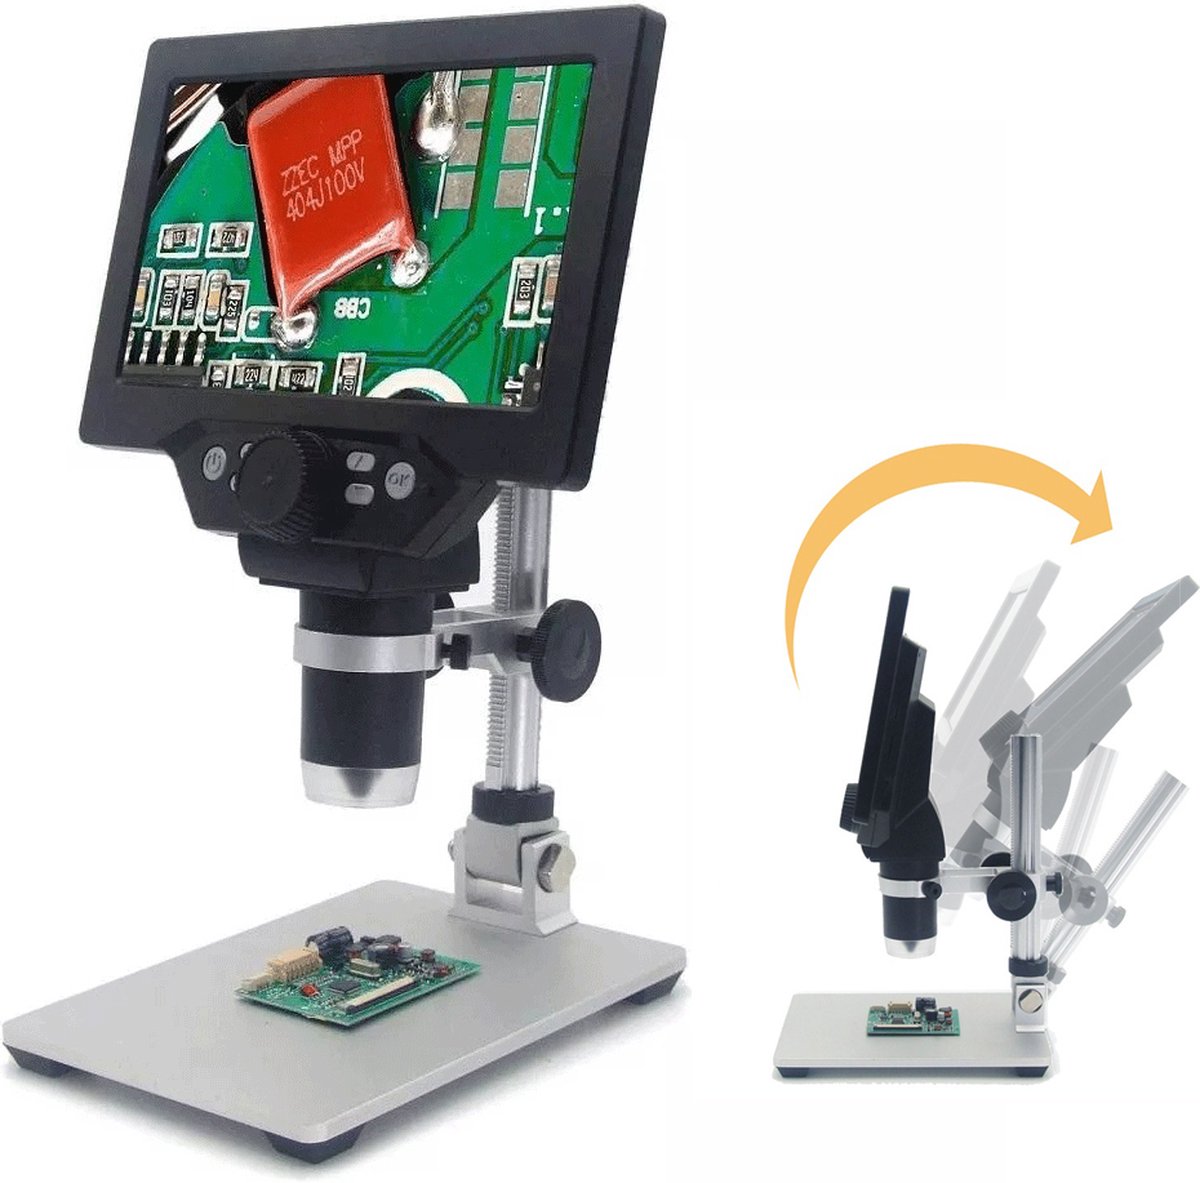 MUSTOOL G1200 - Digitale Microscoop - 12MP 7 Inch LCD Microscoop - 1 - 1200 x - Vergroting